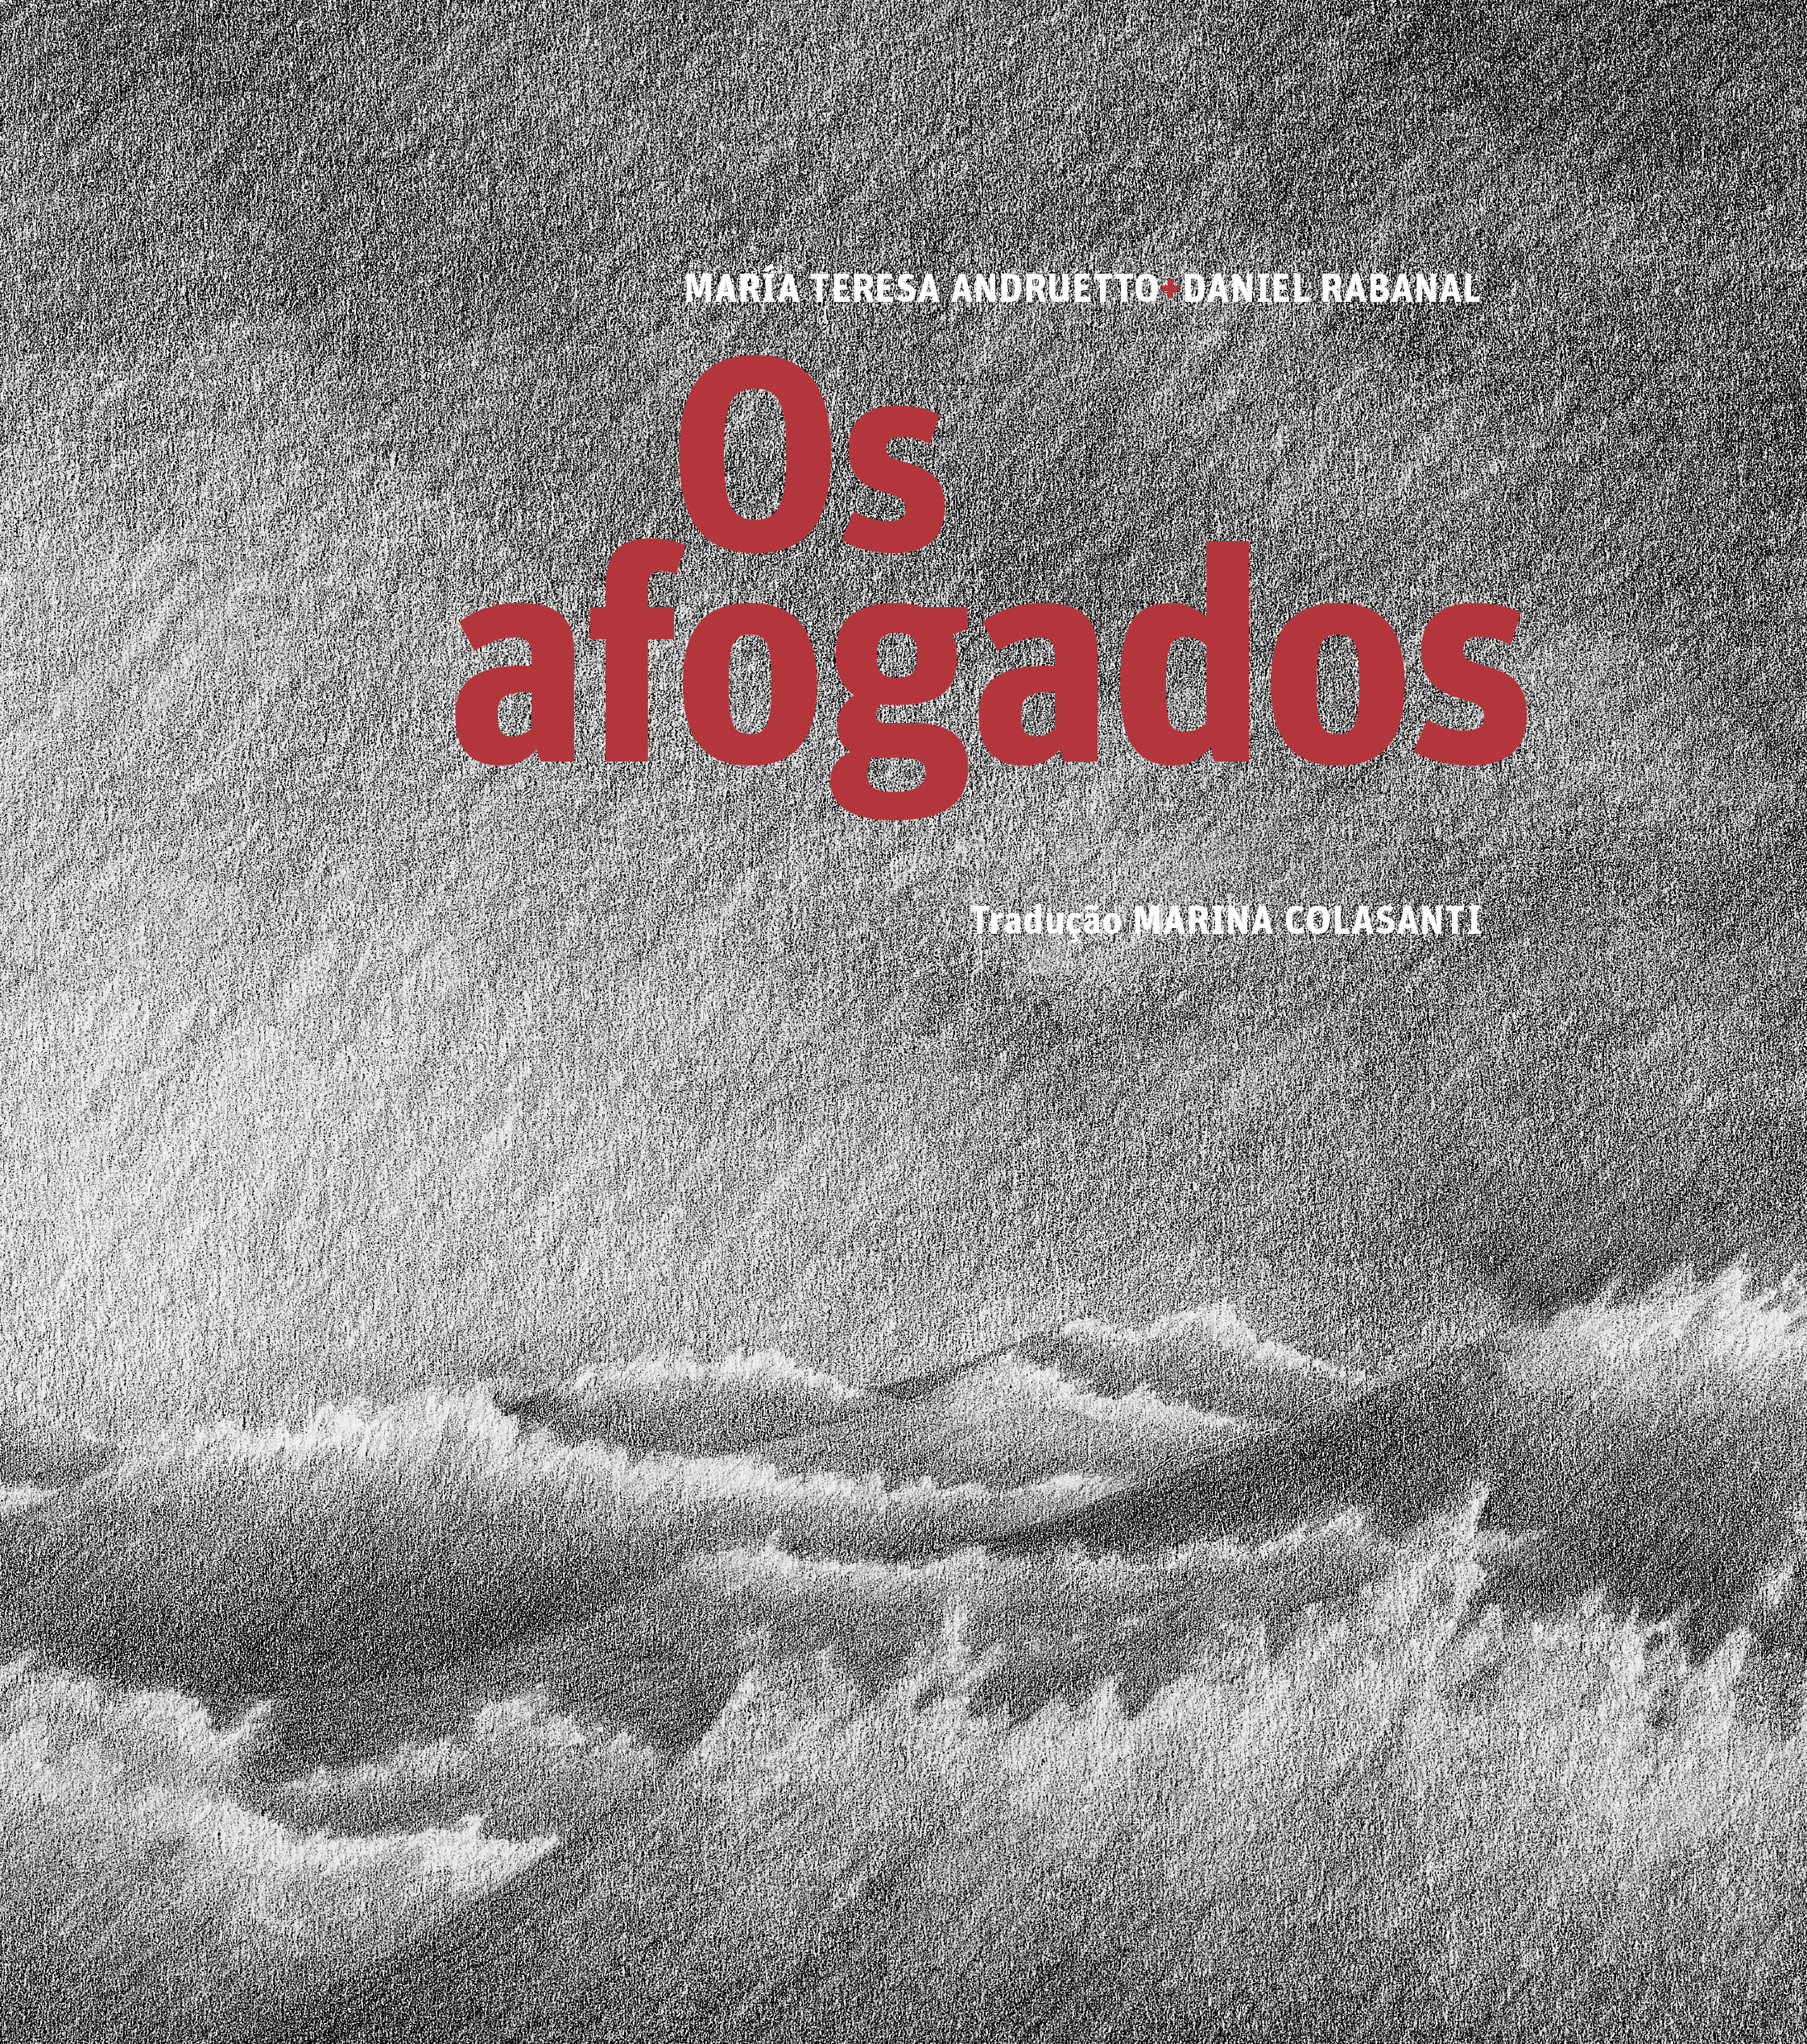 Os afogados, livro de María Teresa Andruetto, Daniel Rabanal